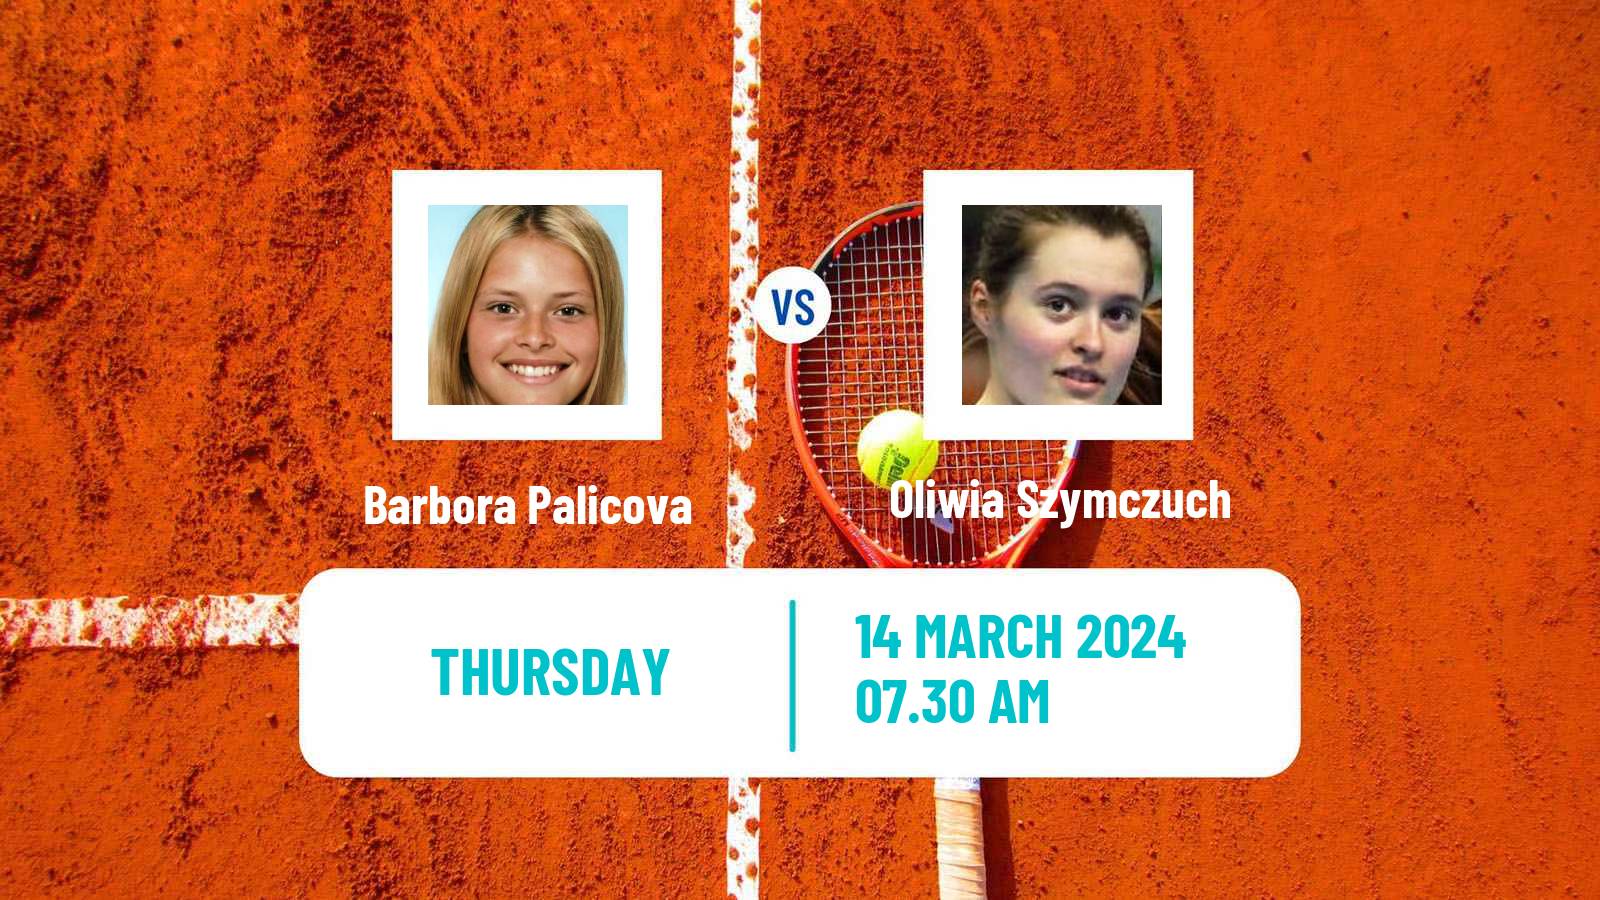 Tennis ITF W35 Solarino 2 Women Barbora Palicova - Oliwia Szymczuch